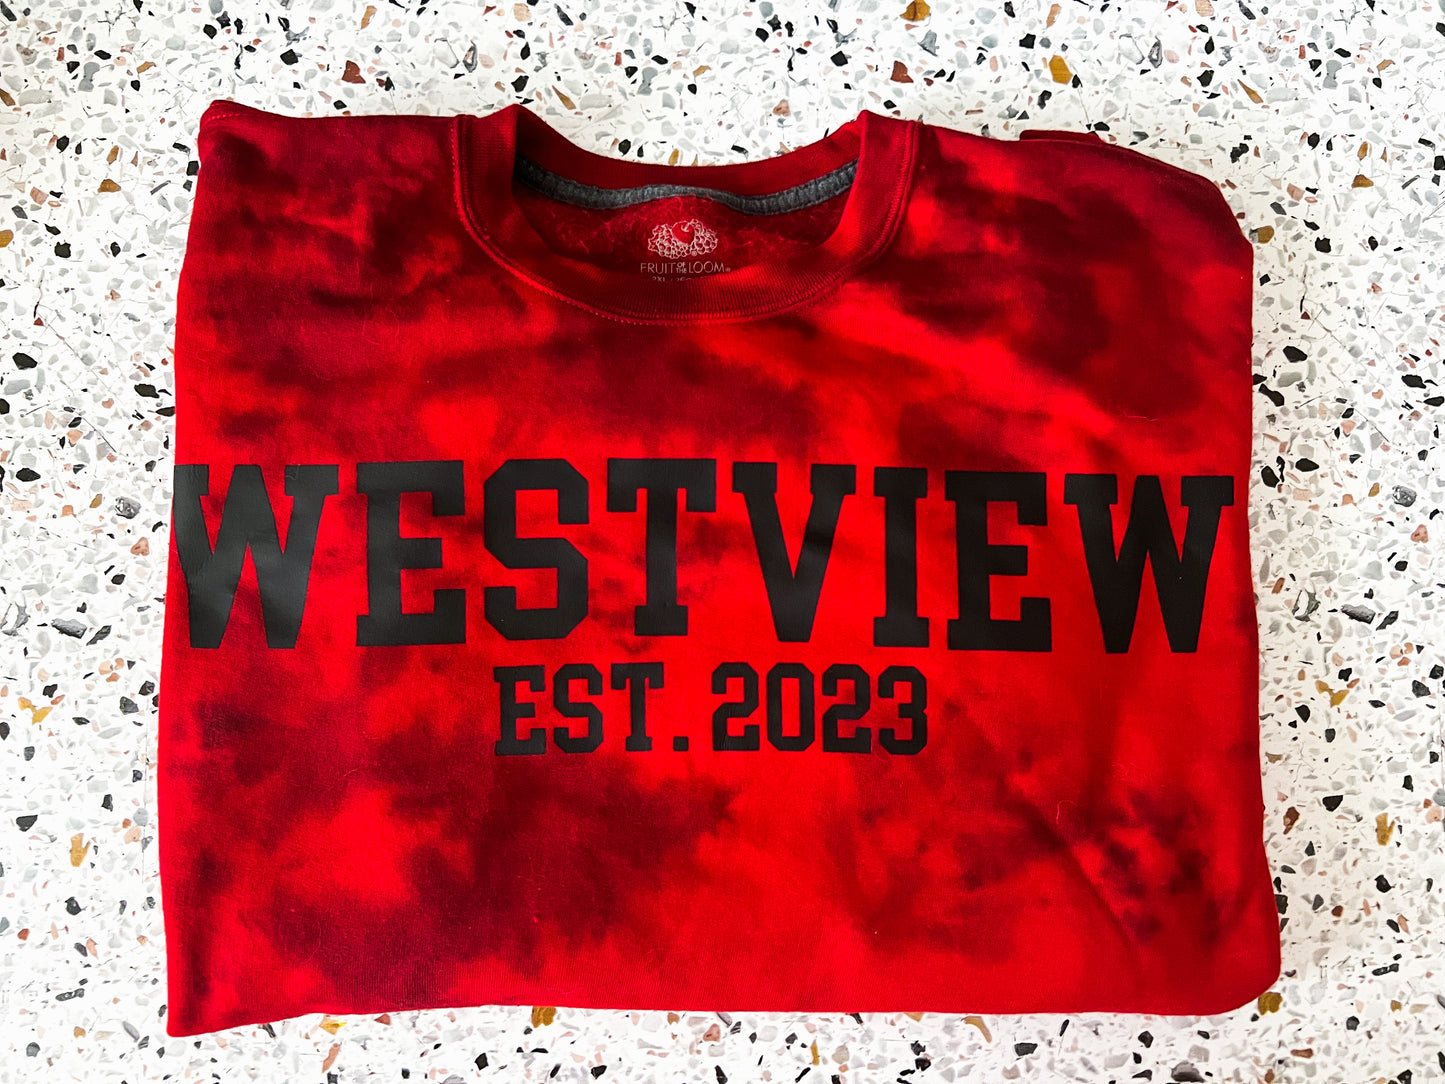 Westview Inspired Crewneck